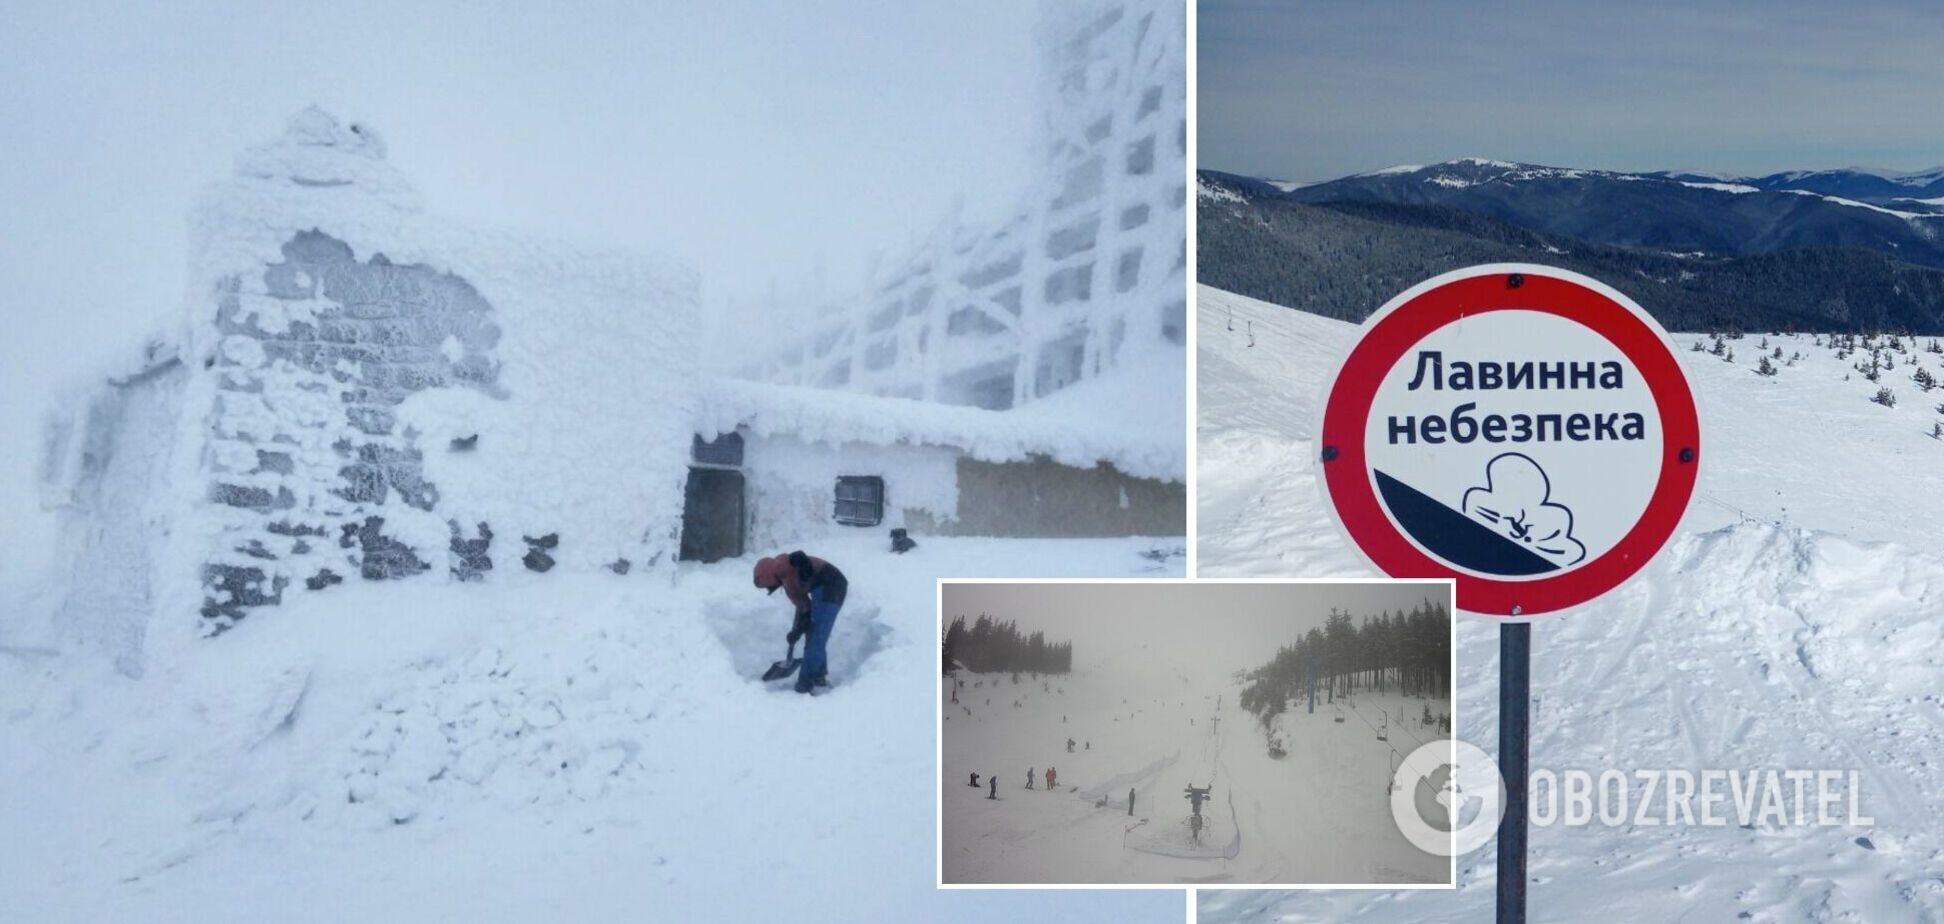 У Карпатах ударив мороз до 18 градусів, гори замело снігом: туристів попередили про небезпеку. Фото